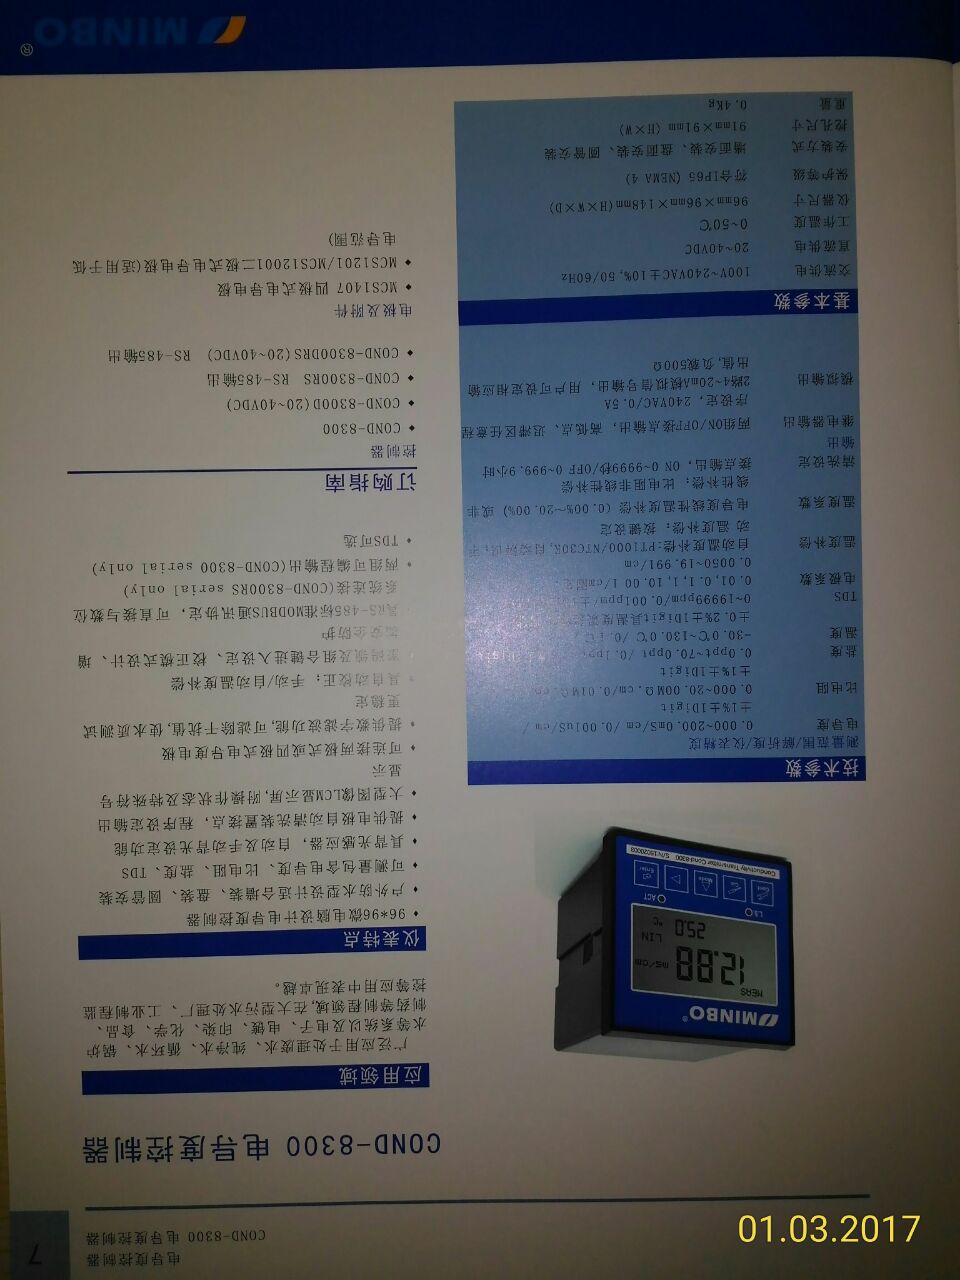 Cond-8300电导率变送器、电导率仪厂家 型号：COND-8300 线电导率仪 机型 COND-